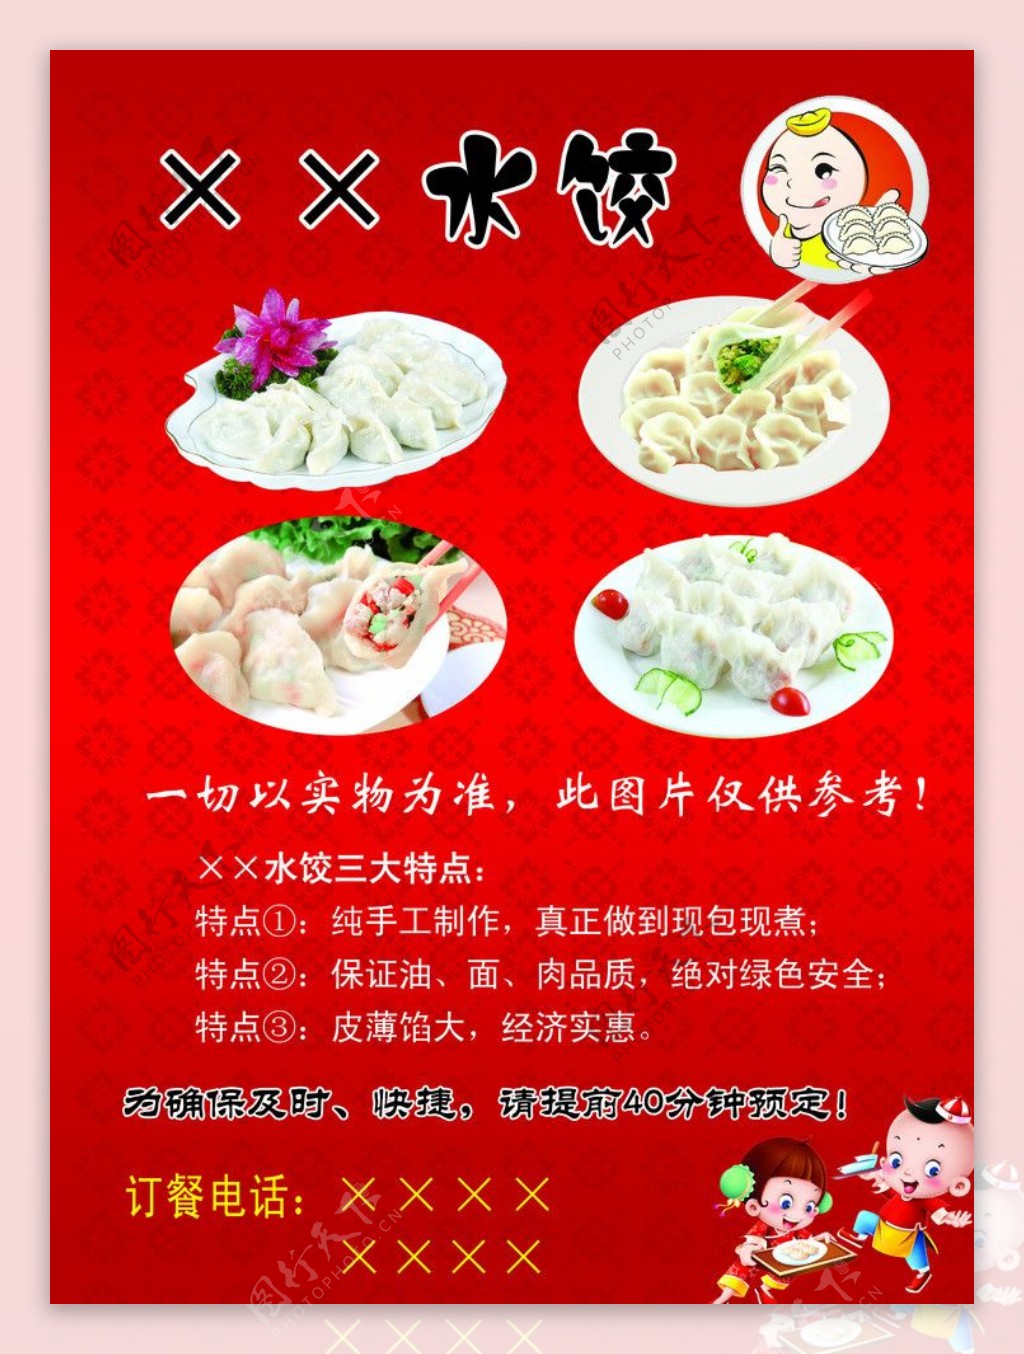 水饺宣传图片